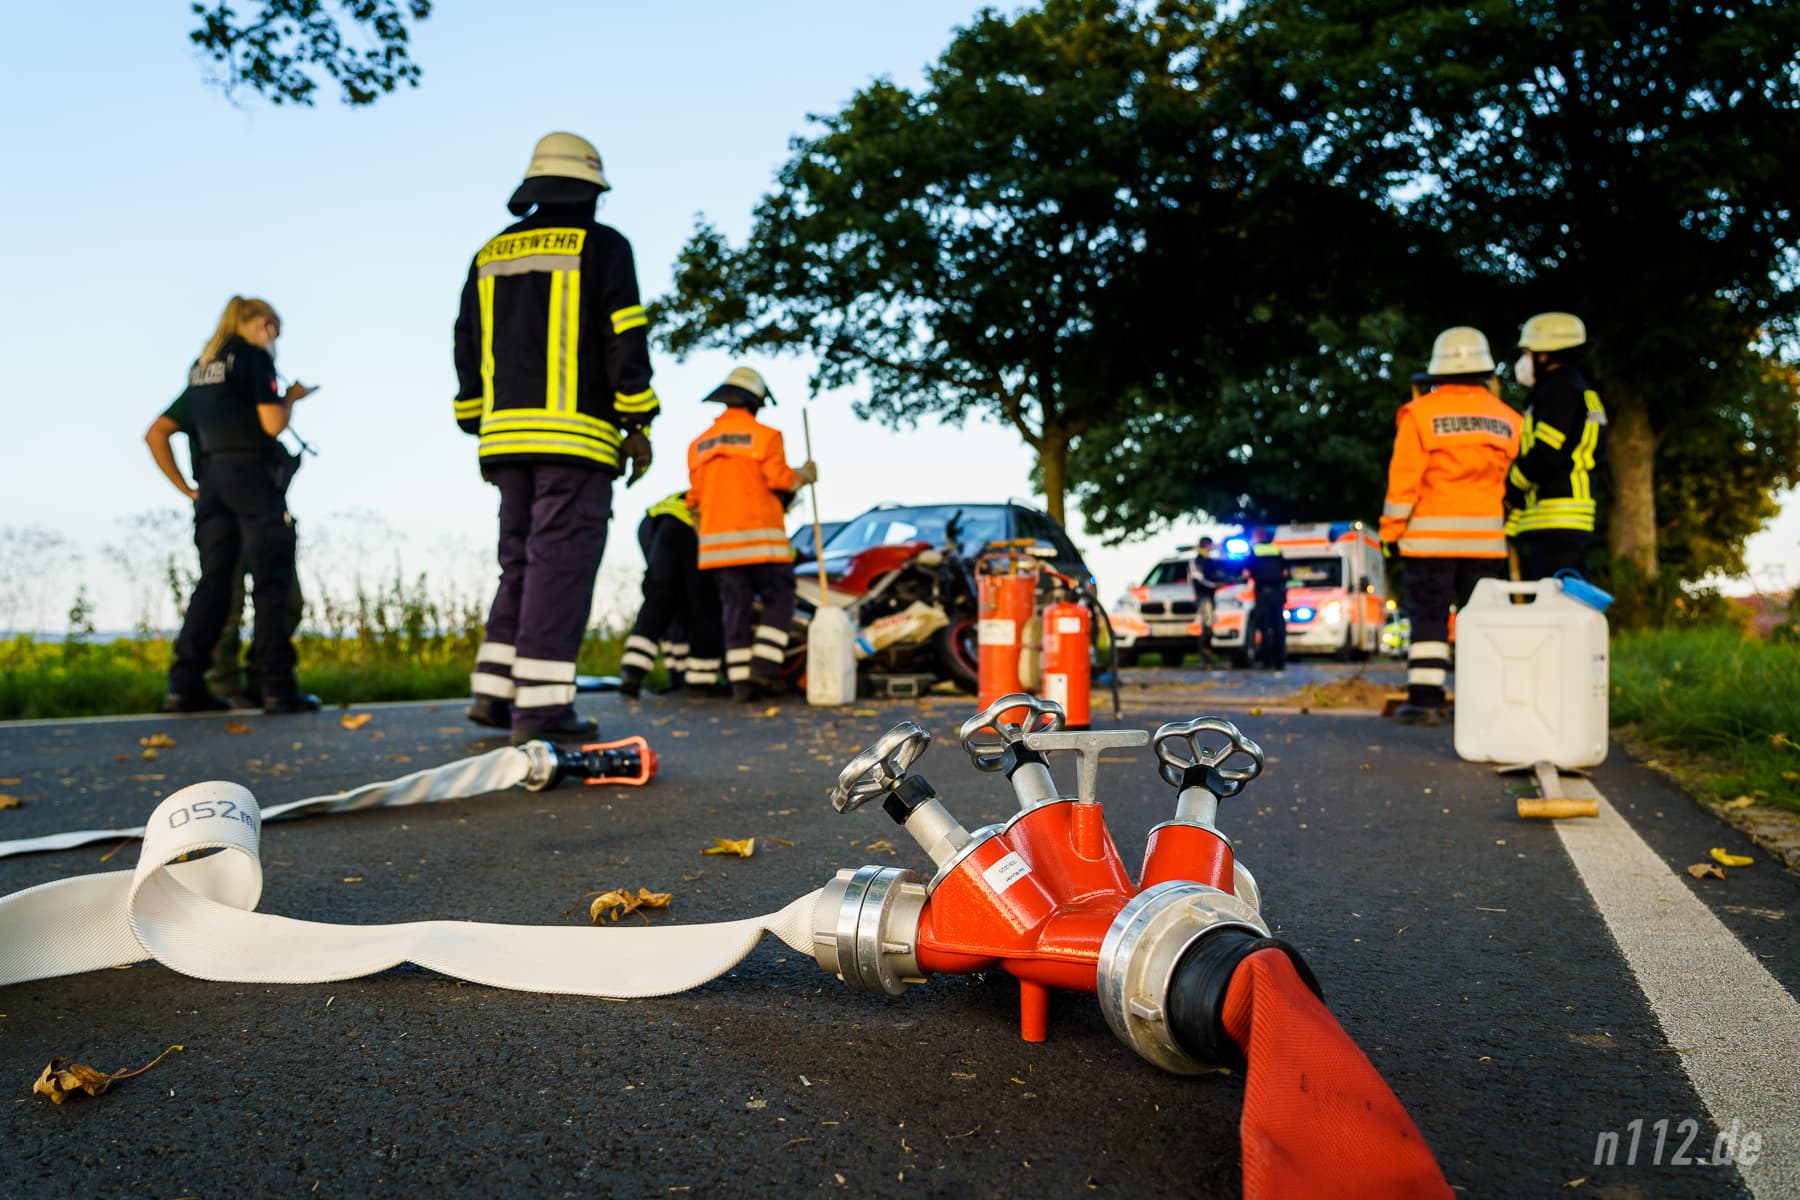 Für alle Fälle und die Sicherheit der Helfer: Ein an den Löschwassertank angeschlossener Verteiler mit Strahlrohr liegt bereit (Foto: n112.de/Stefan Hillen)